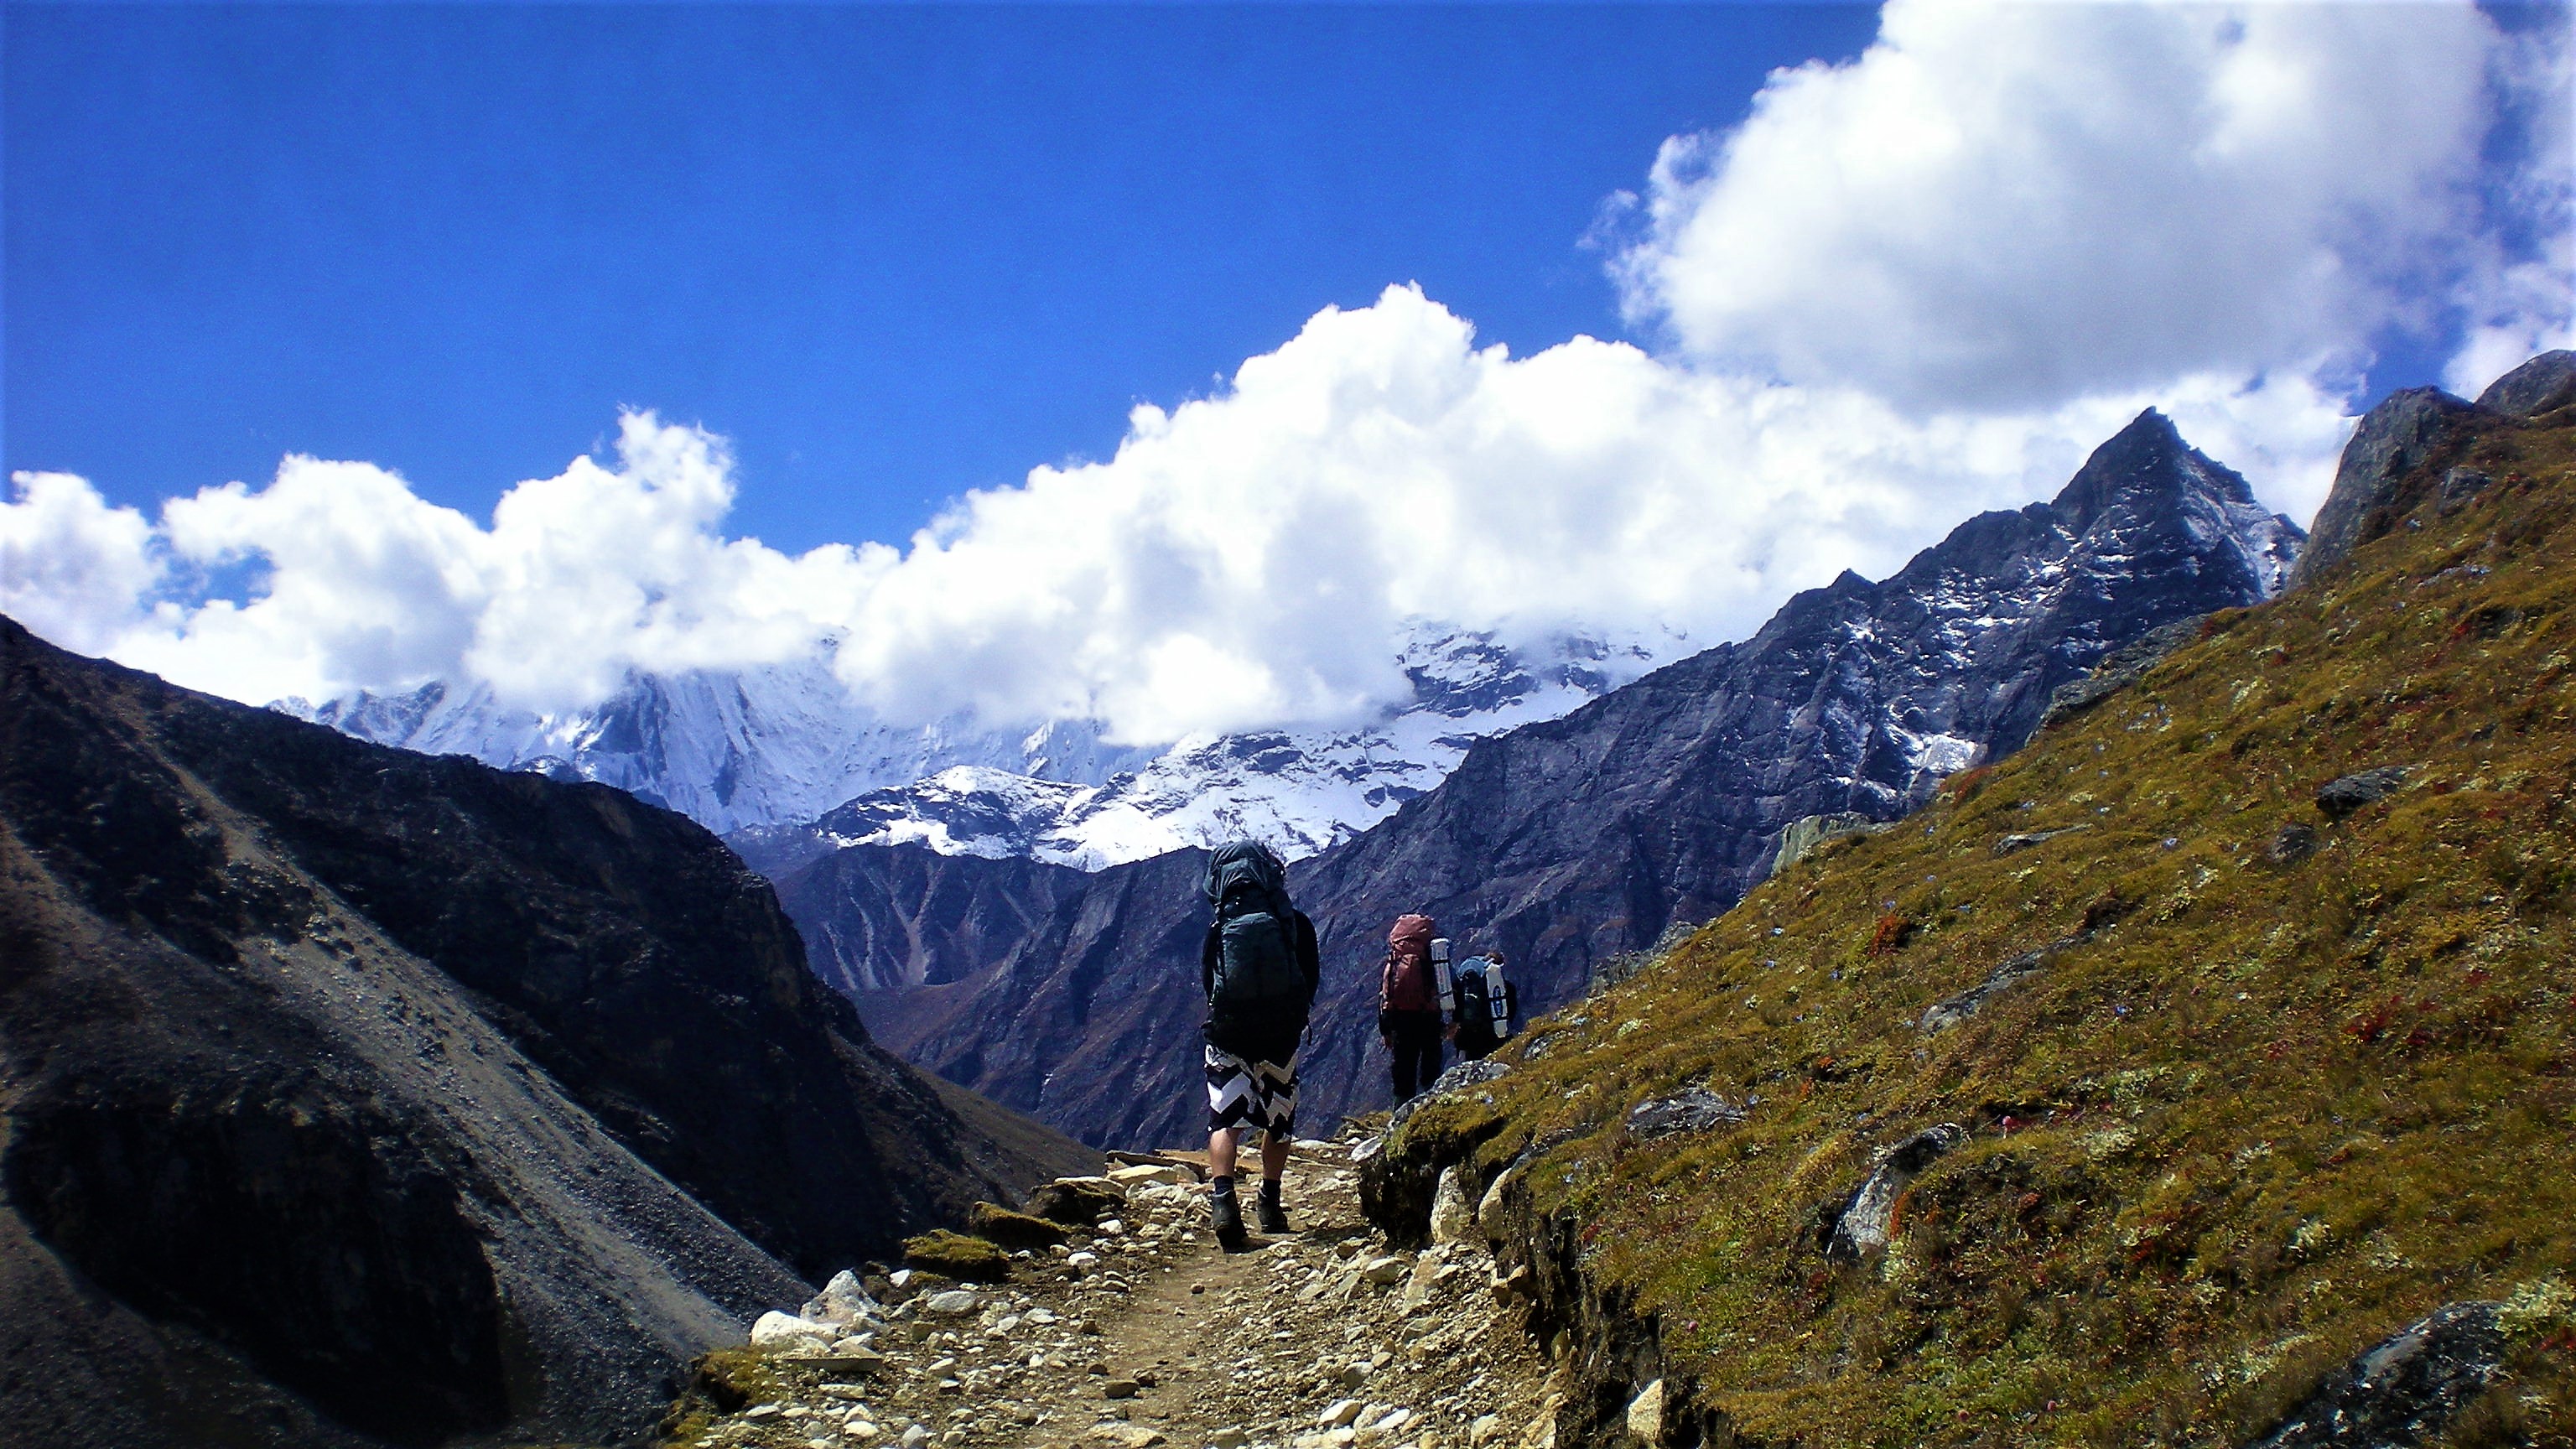 Renjo La Pass (5,390 m)